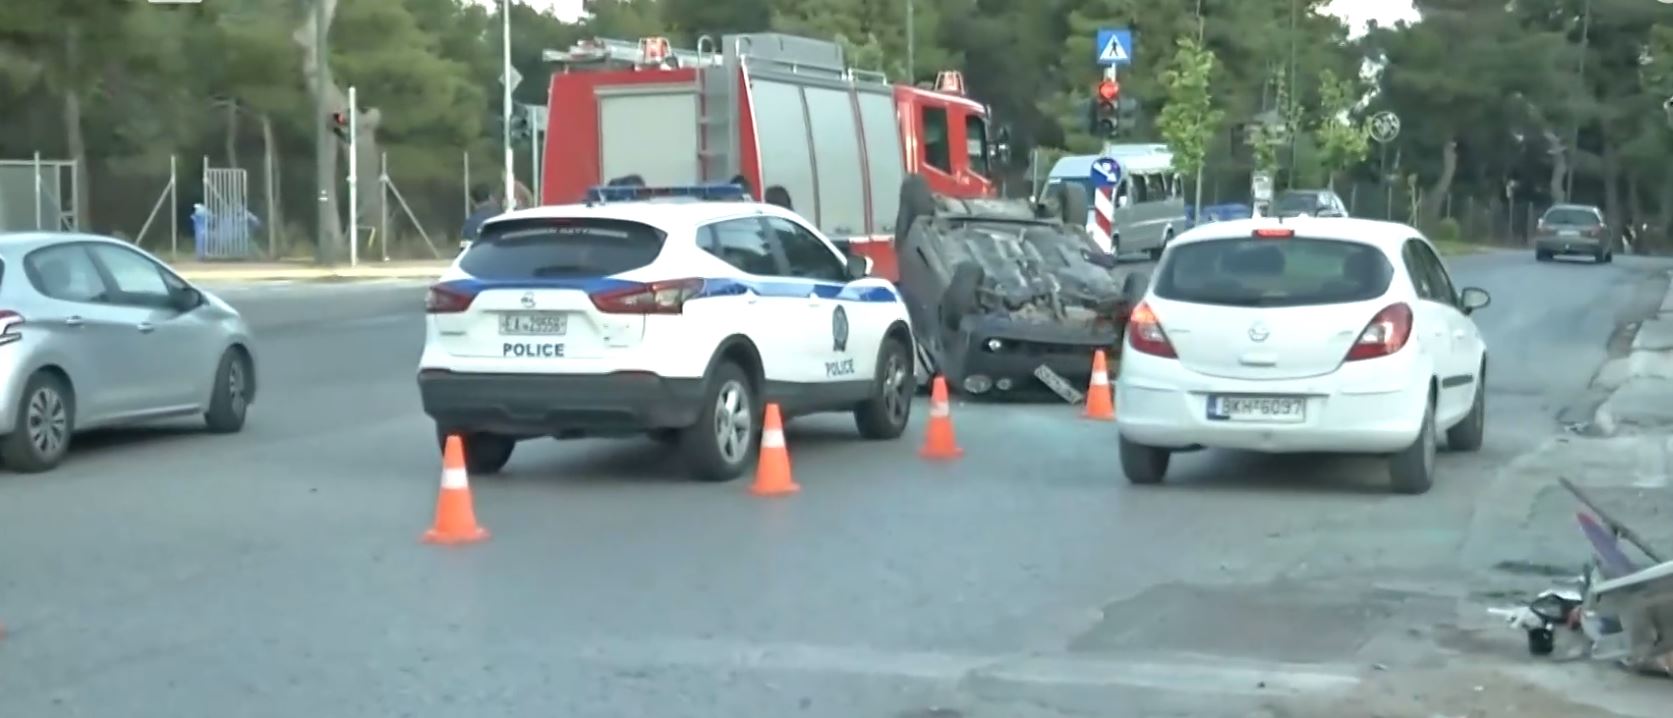 Τροχαίο στην Λεωφόρο Μαραθώνος: Αναποδογύρισε αυτοκίνητο